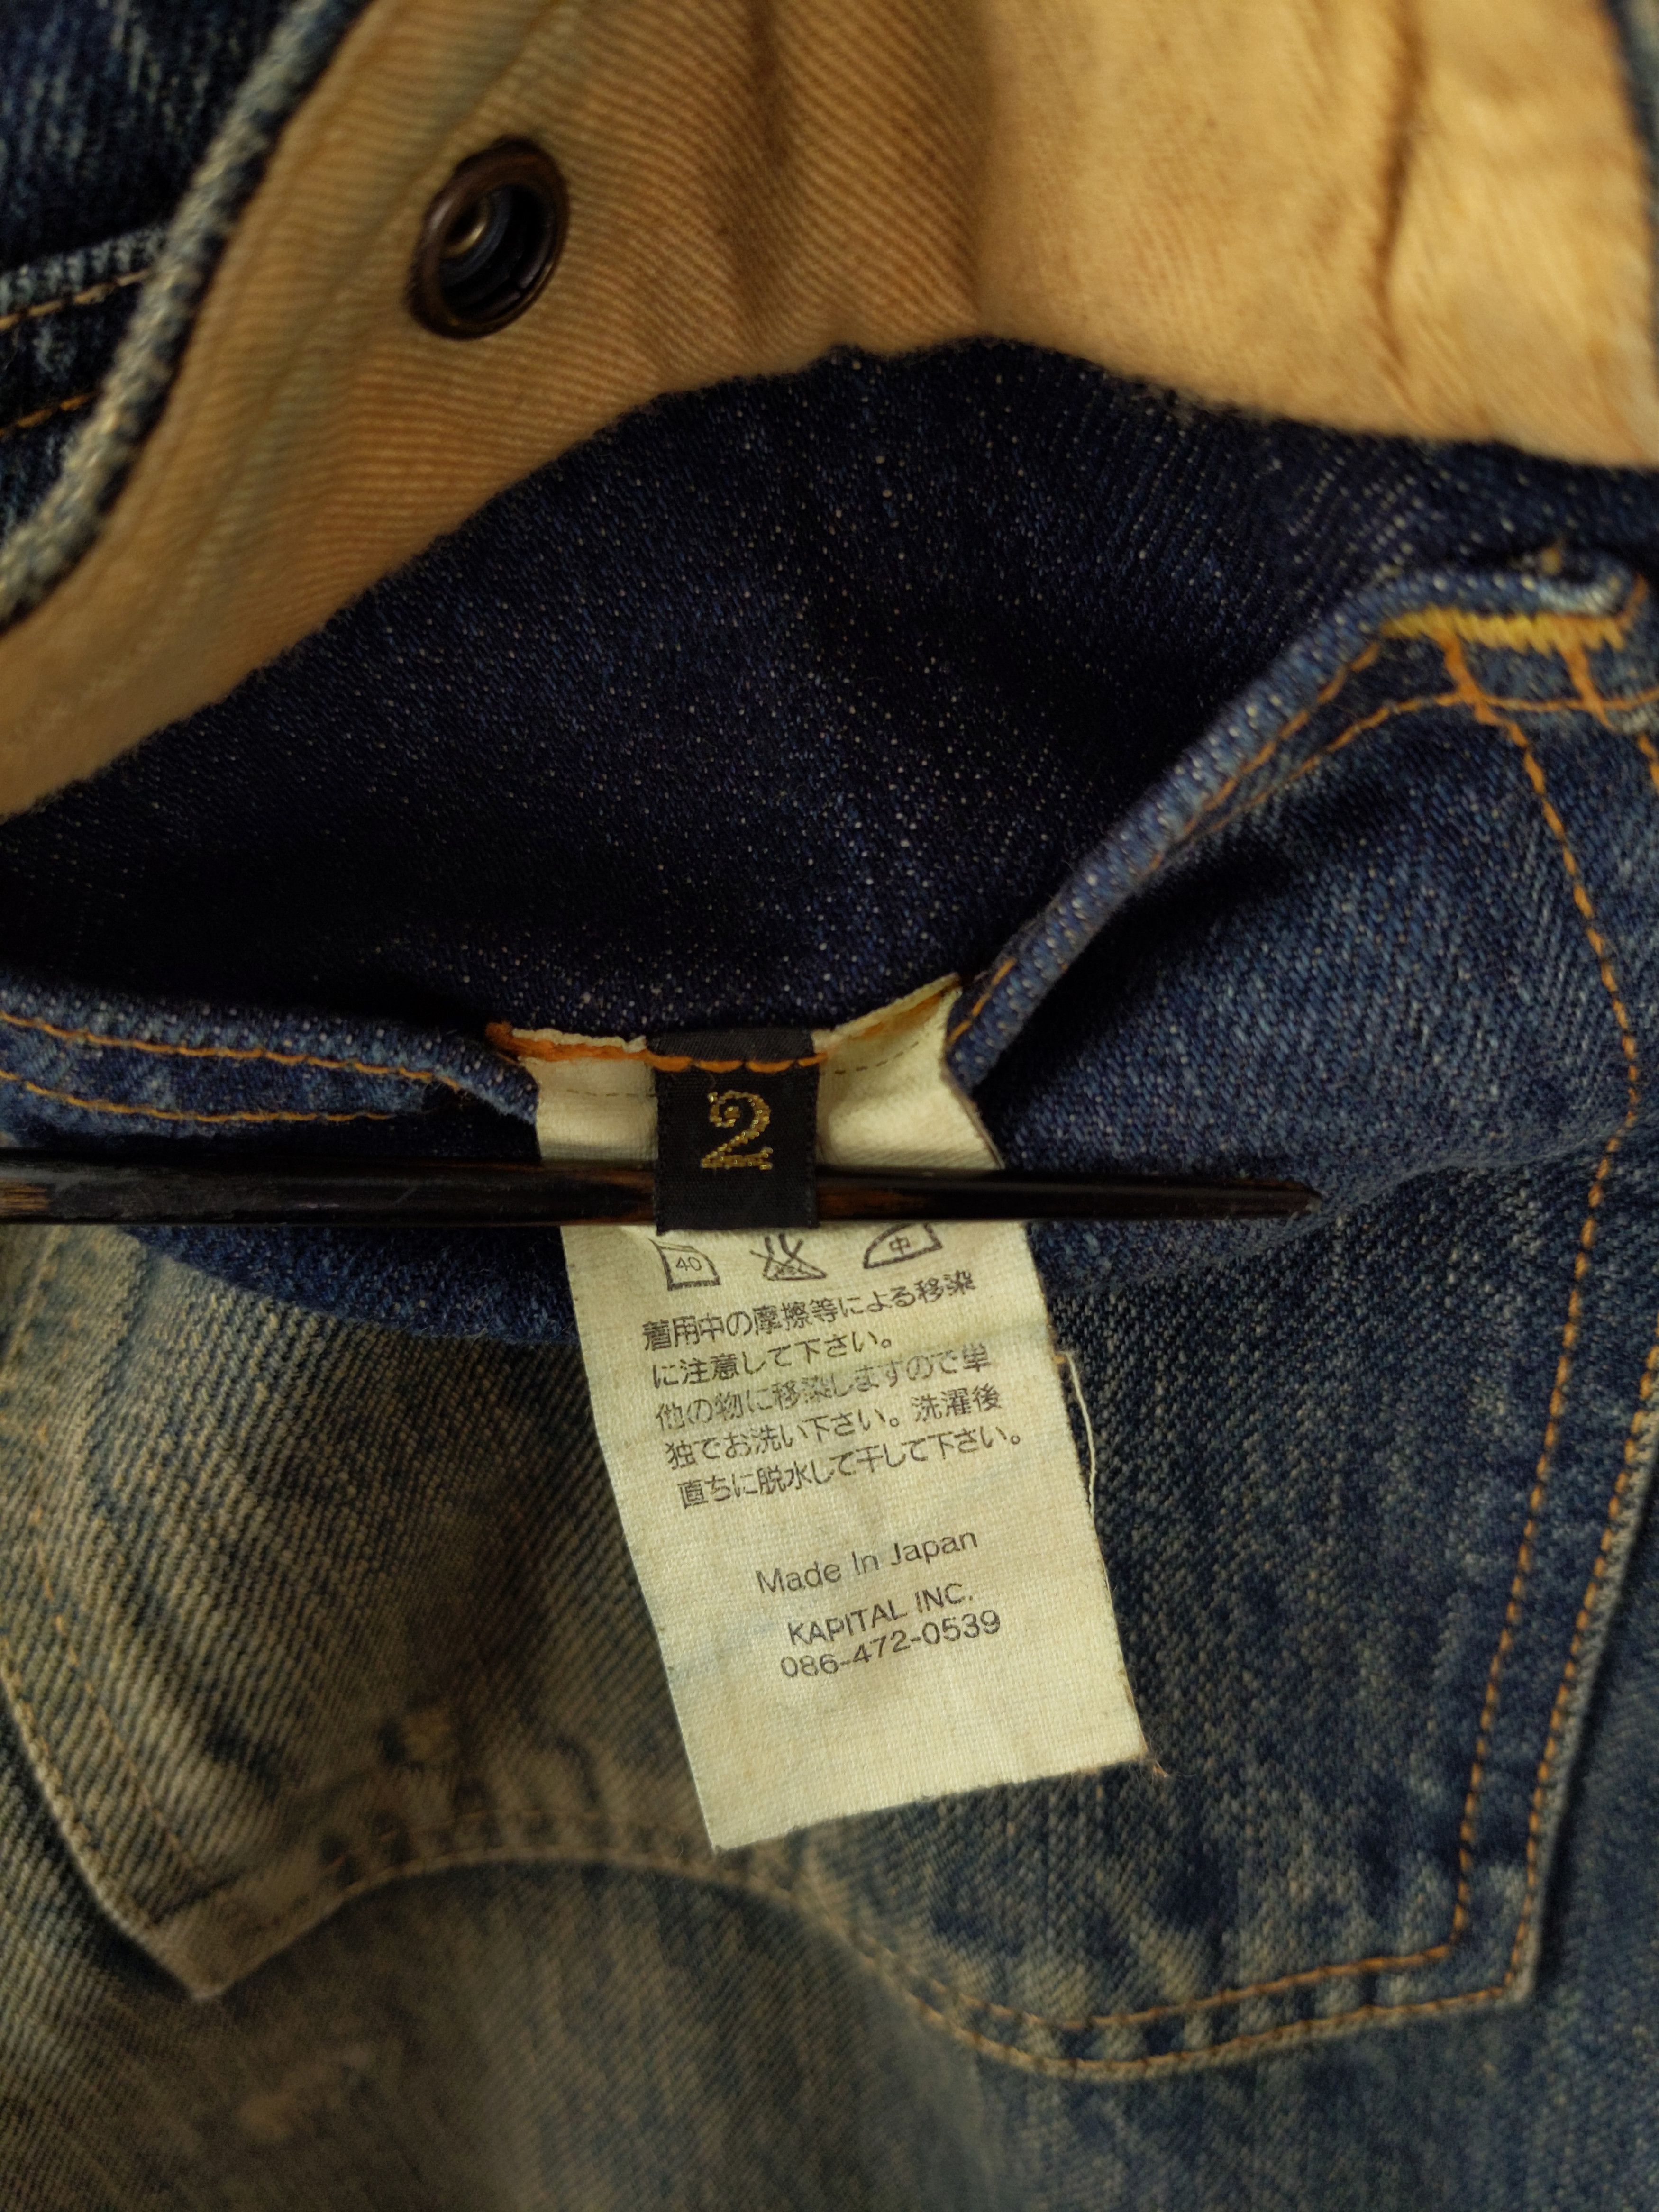 Kapital KAPITAL KOUNTRY Sashiko Boro Bush Pants Jeans Denim US S Size US 29 - 9 Thumbnail